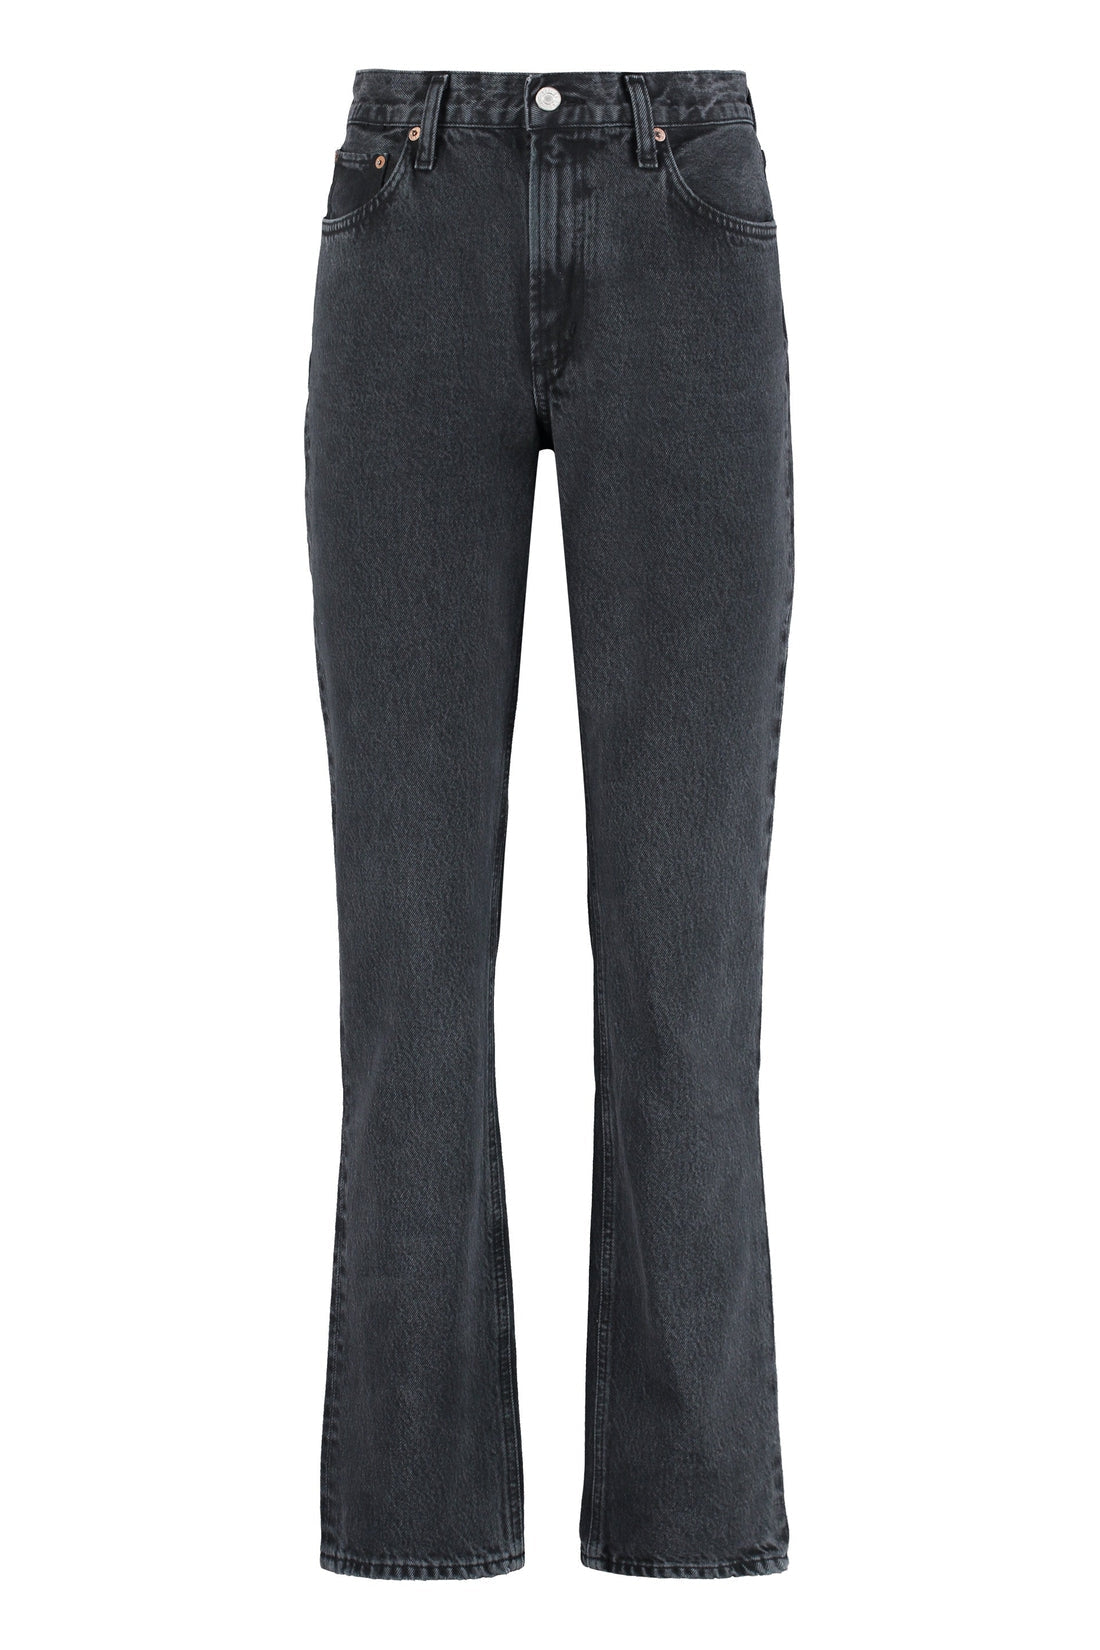 AGOLDE-OUTLET-SALE-Lyle slim fit jeans-ARCHIVIST